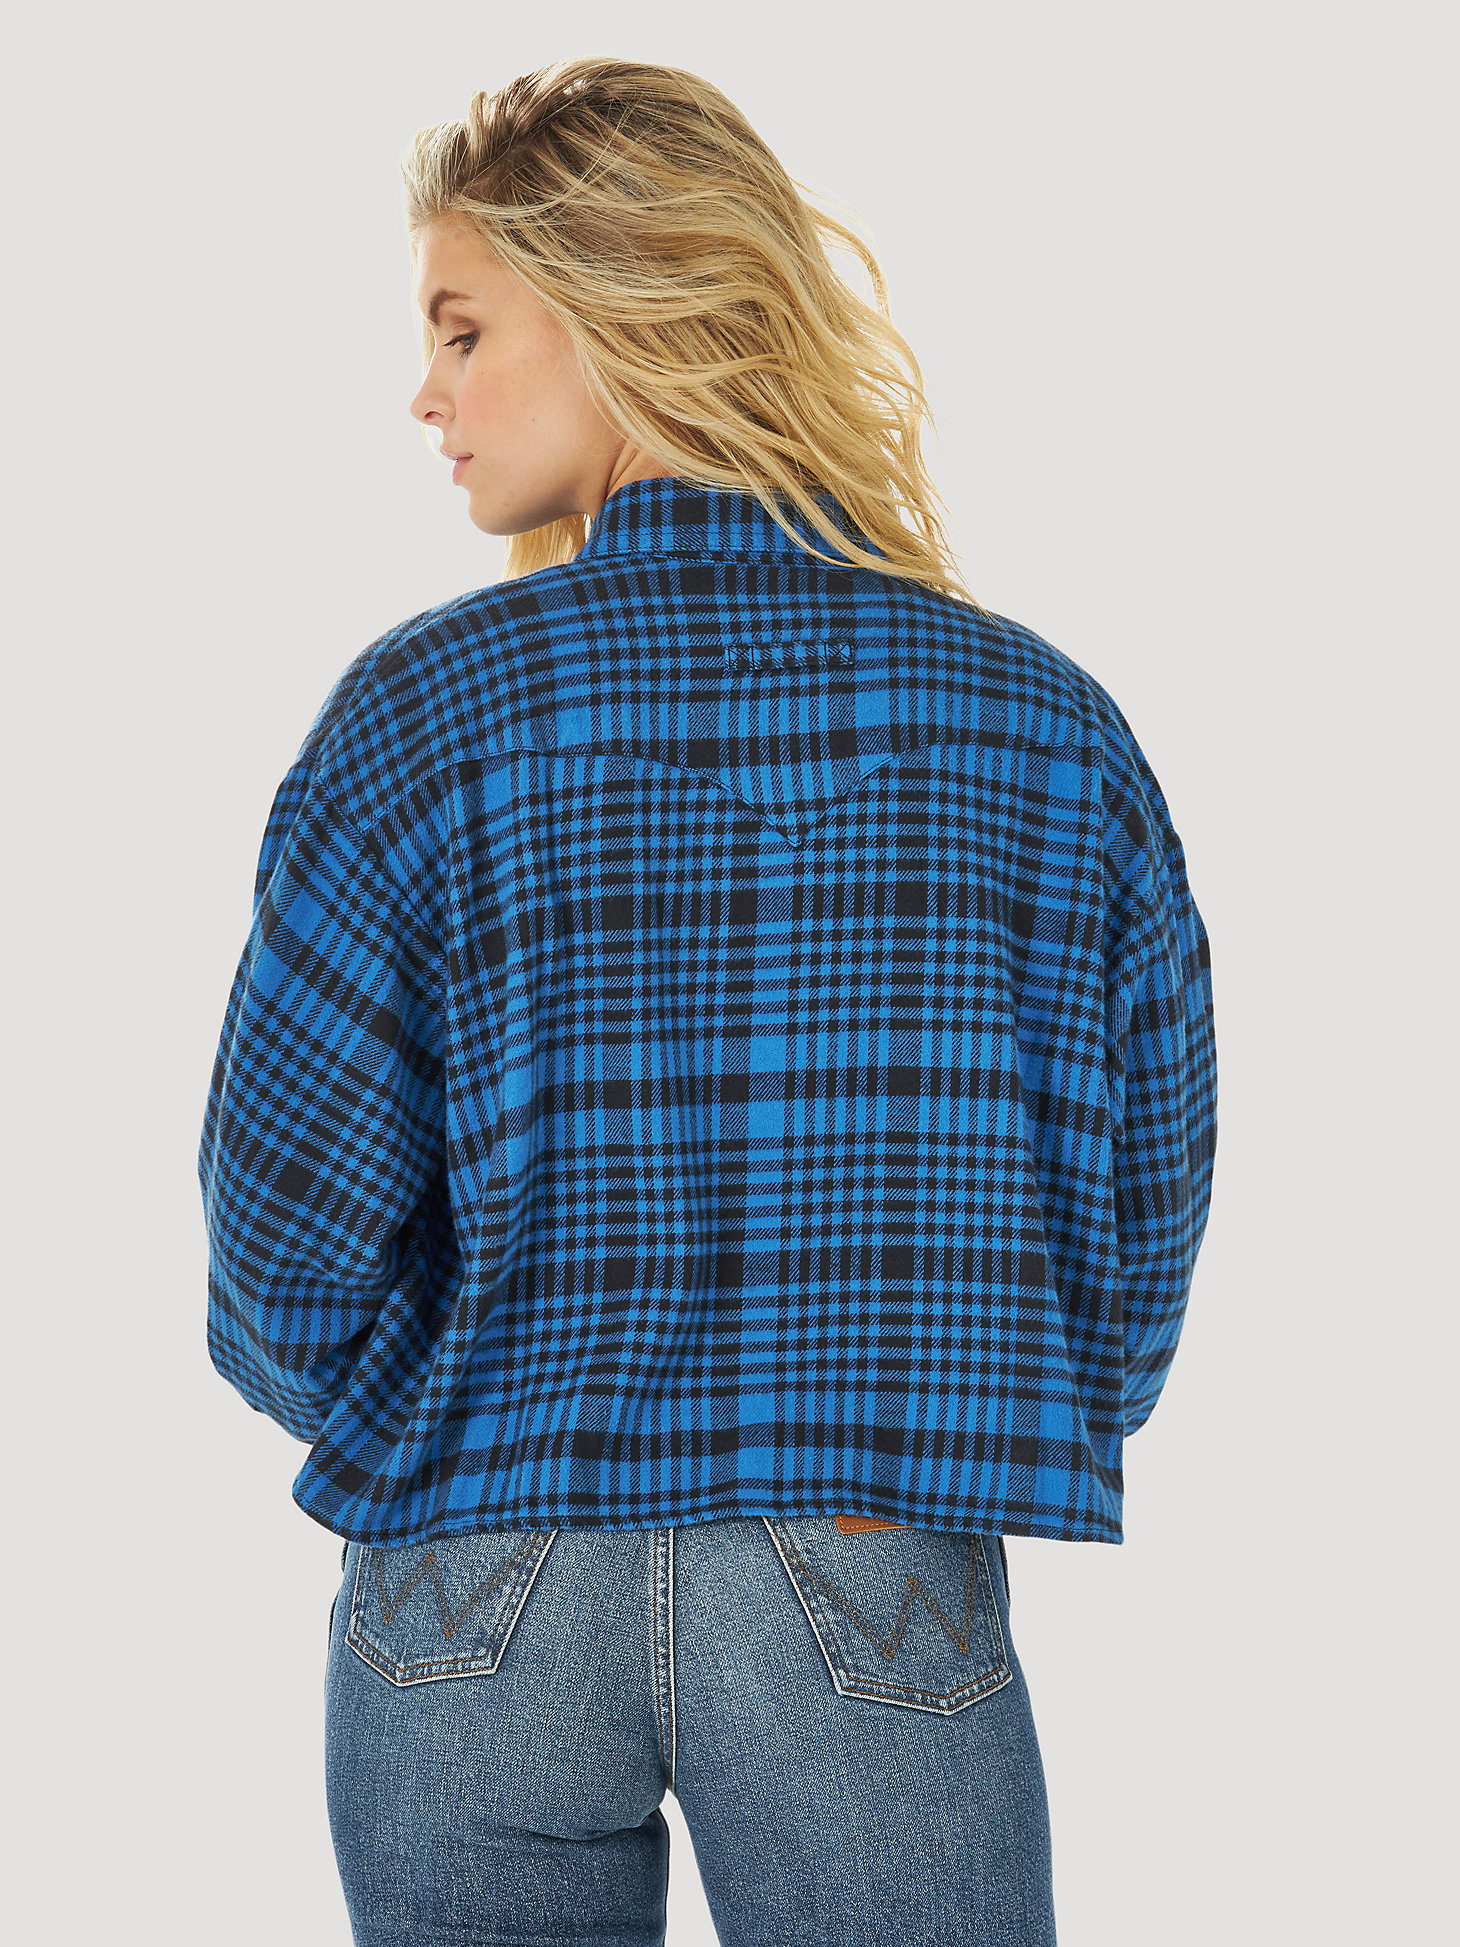 Women's Wrangler® Cropped Plaid Shirt in Wrangler Blue alternative view 1